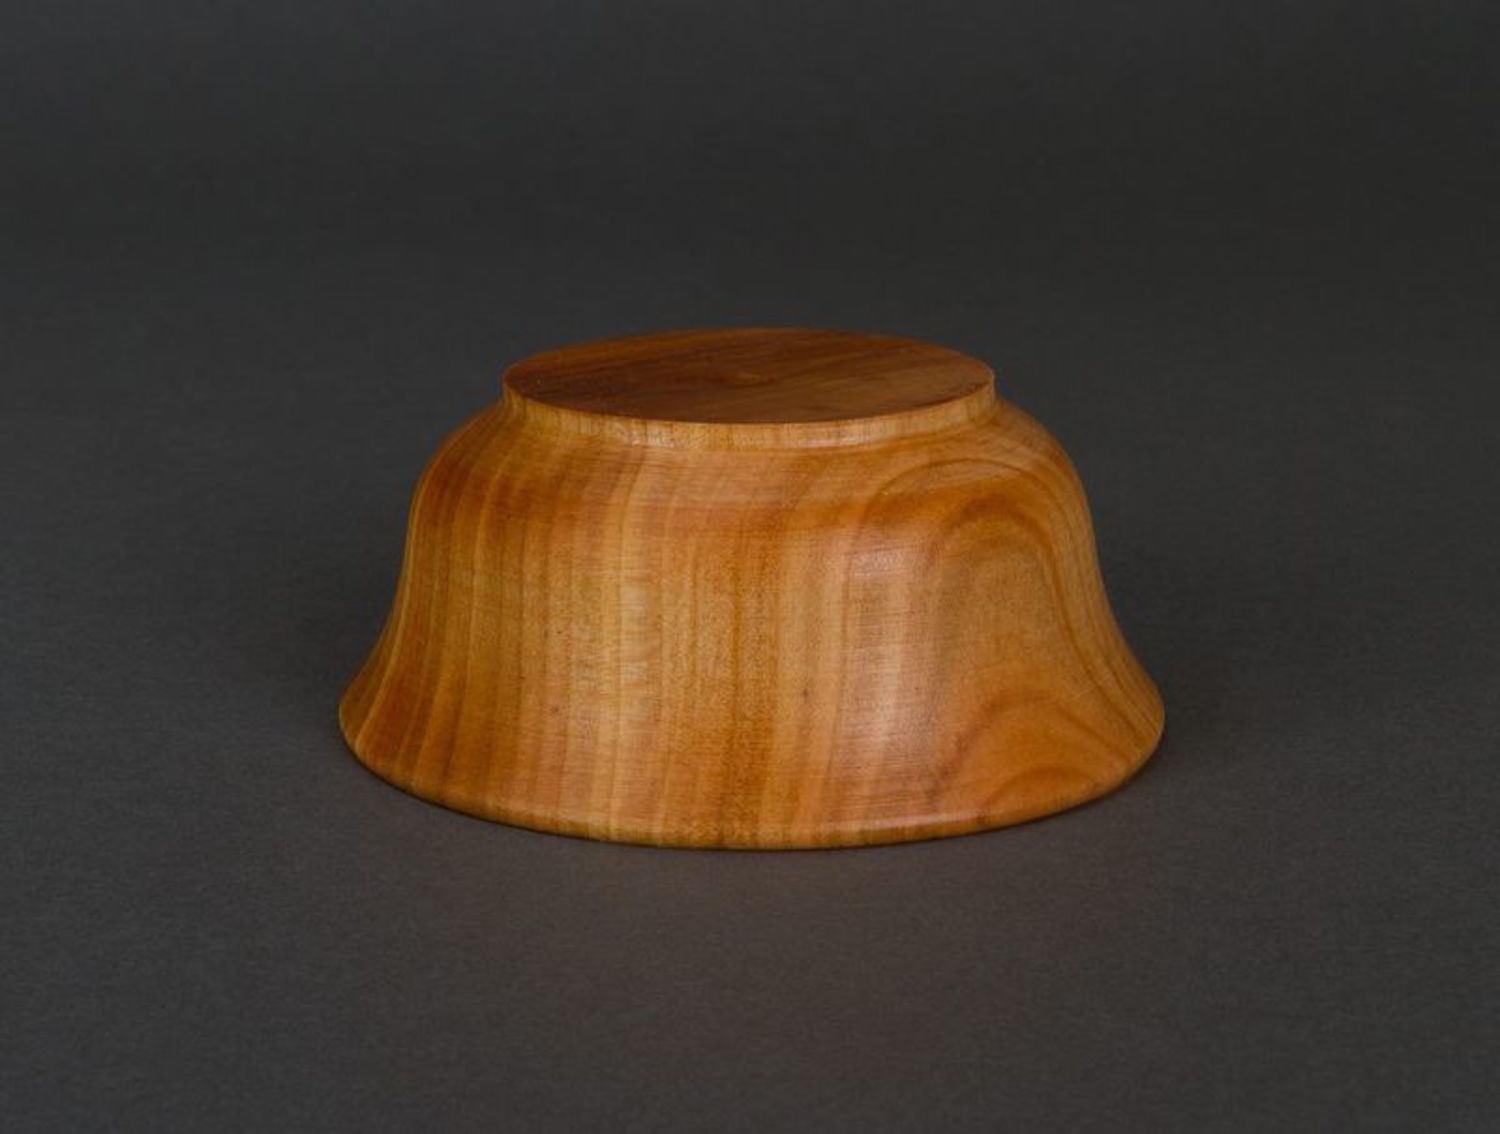 Bowl made of natural wood photo 5